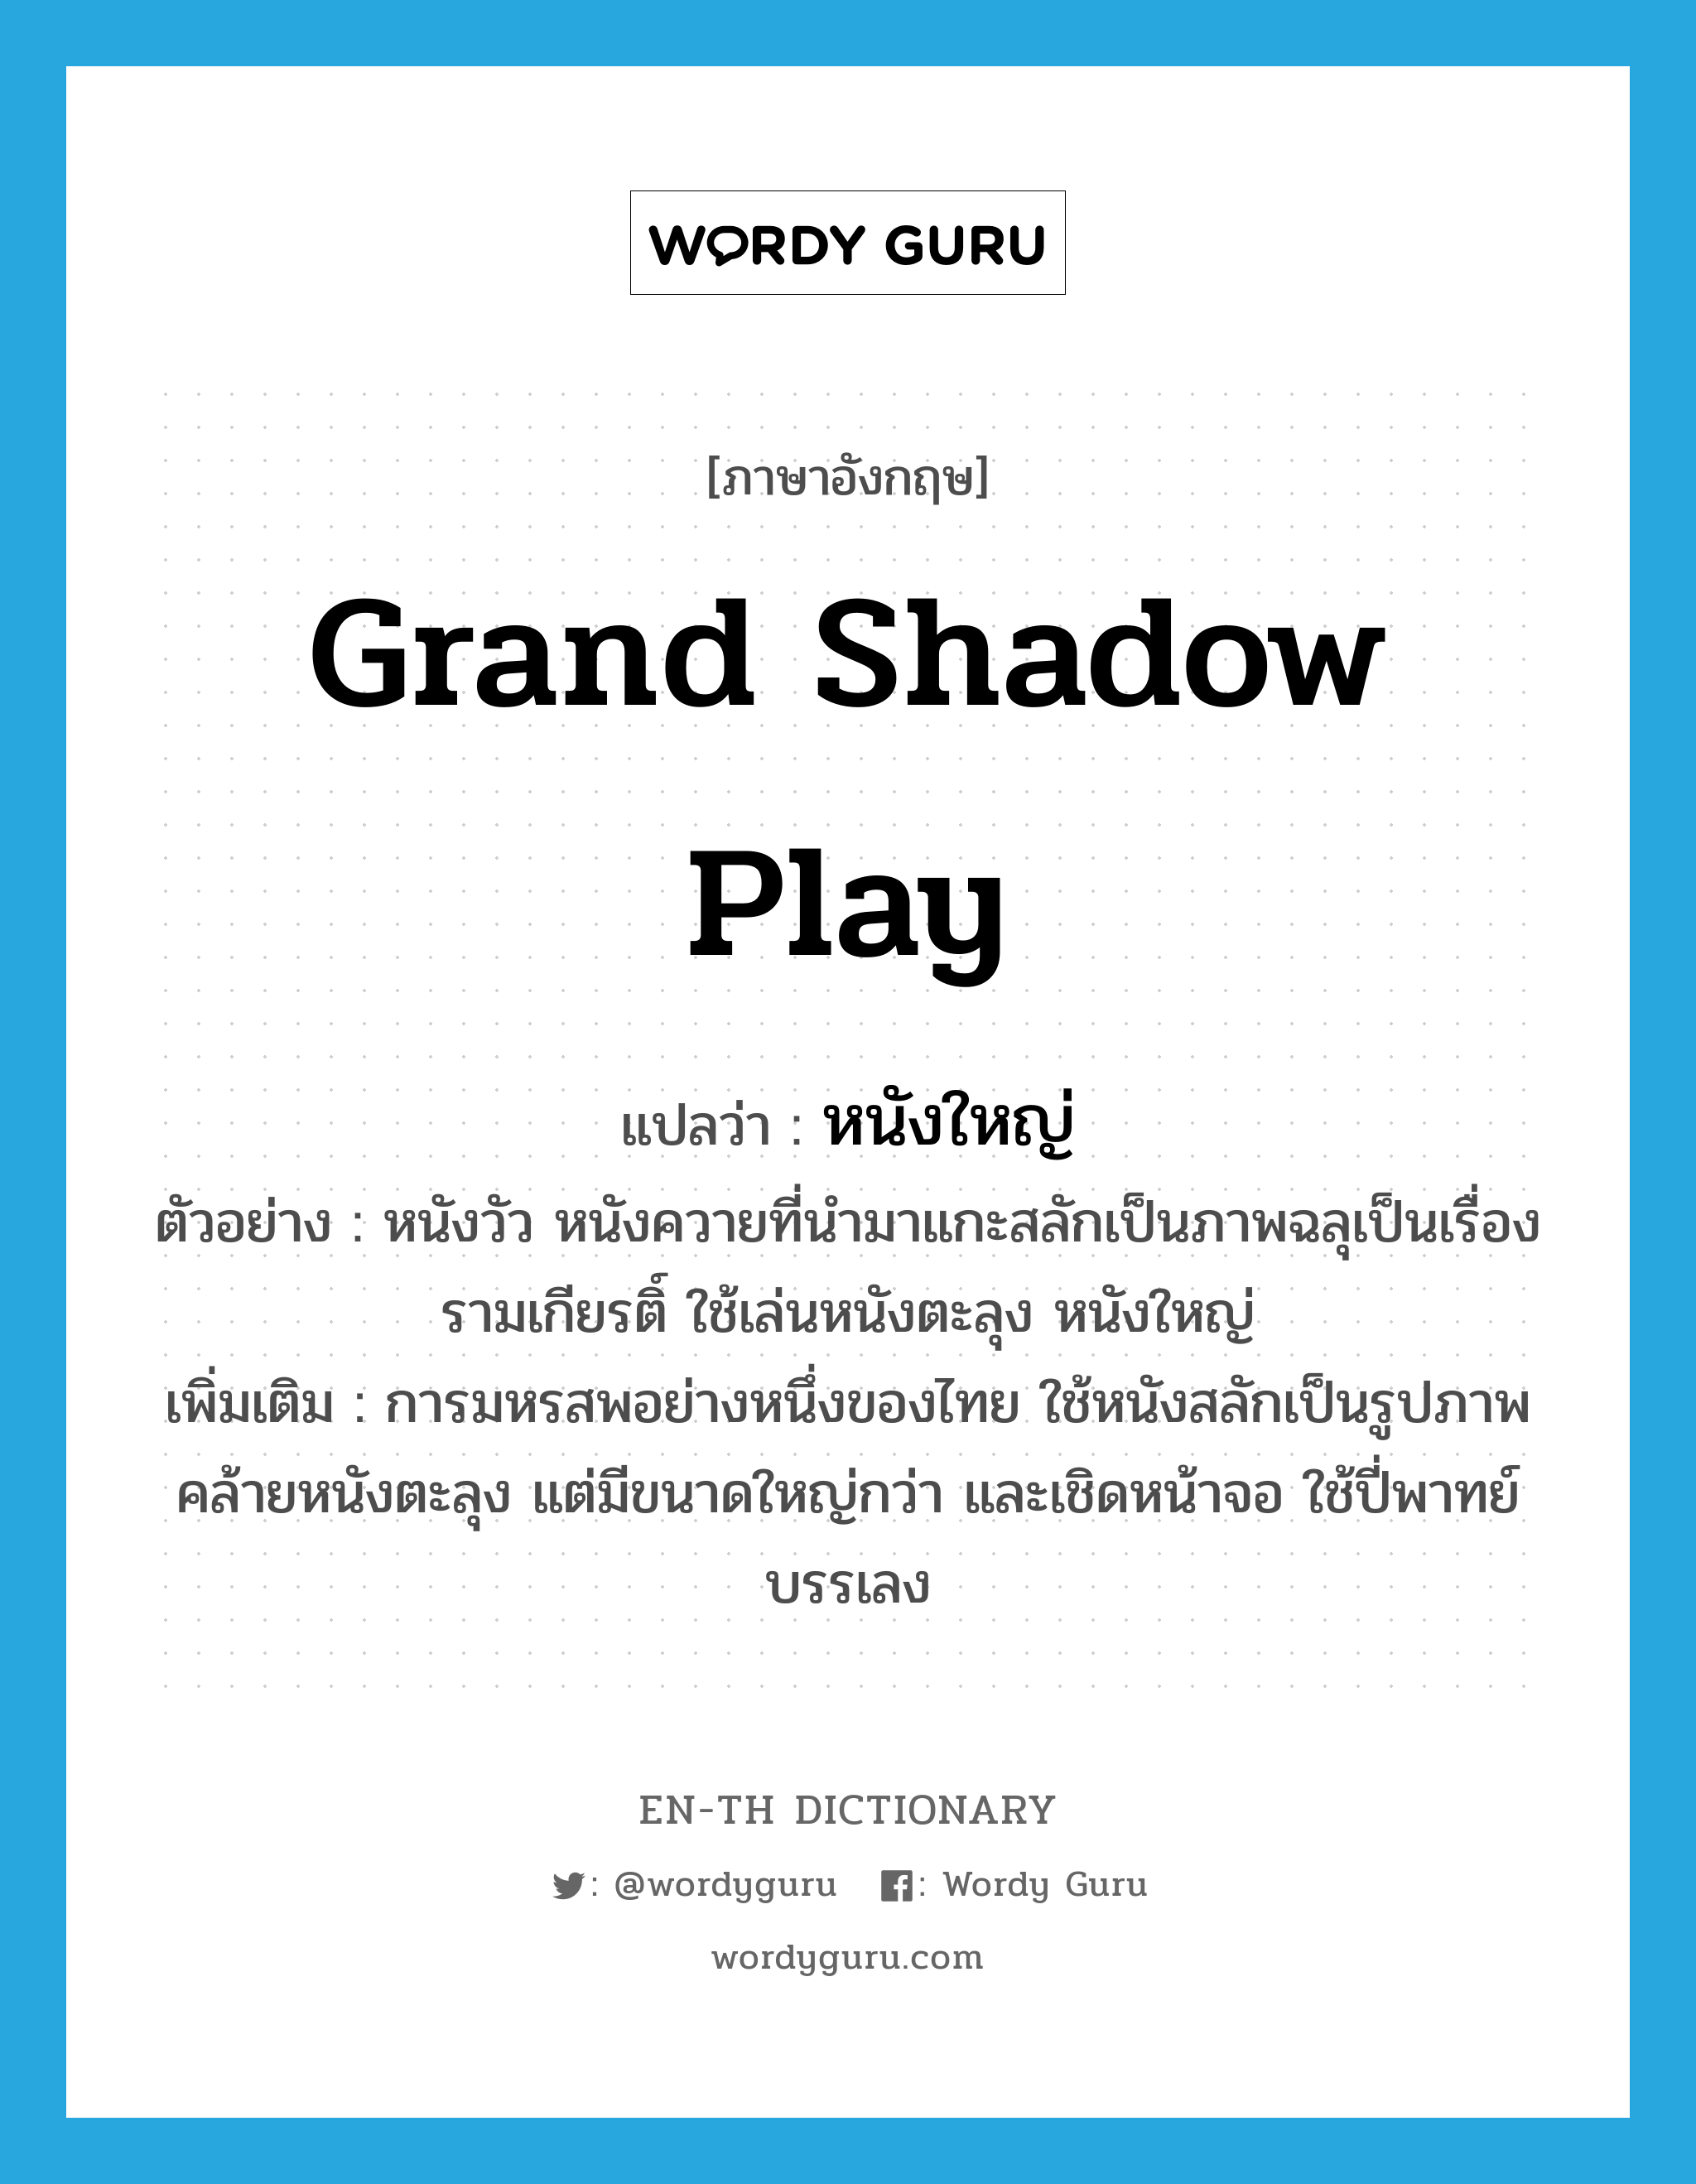 grand shadow play แปลว่า?, คำศัพท์ภาษาอังกฤษ grand shadow play แปลว่า หนังใหญ่ ประเภท N ตัวอย่าง หนังวัว หนังควายที่นำมาแกะสลักเป็นภาพฉลุเป็นเรื่องรามเกียรติ์ ใช้เล่นหนังตะลุง หนังใหญ่ เพิ่มเติม การมหรสพอย่างหนึ่งของไทย ใช้หนังสลักเป็นรูปภาพคล้ายหนังตะลุง แต่มีขนาดใหญ่กว่า และเชิดหน้าจอ ใช้ปี่พาทย์บรรเลง หมวด N